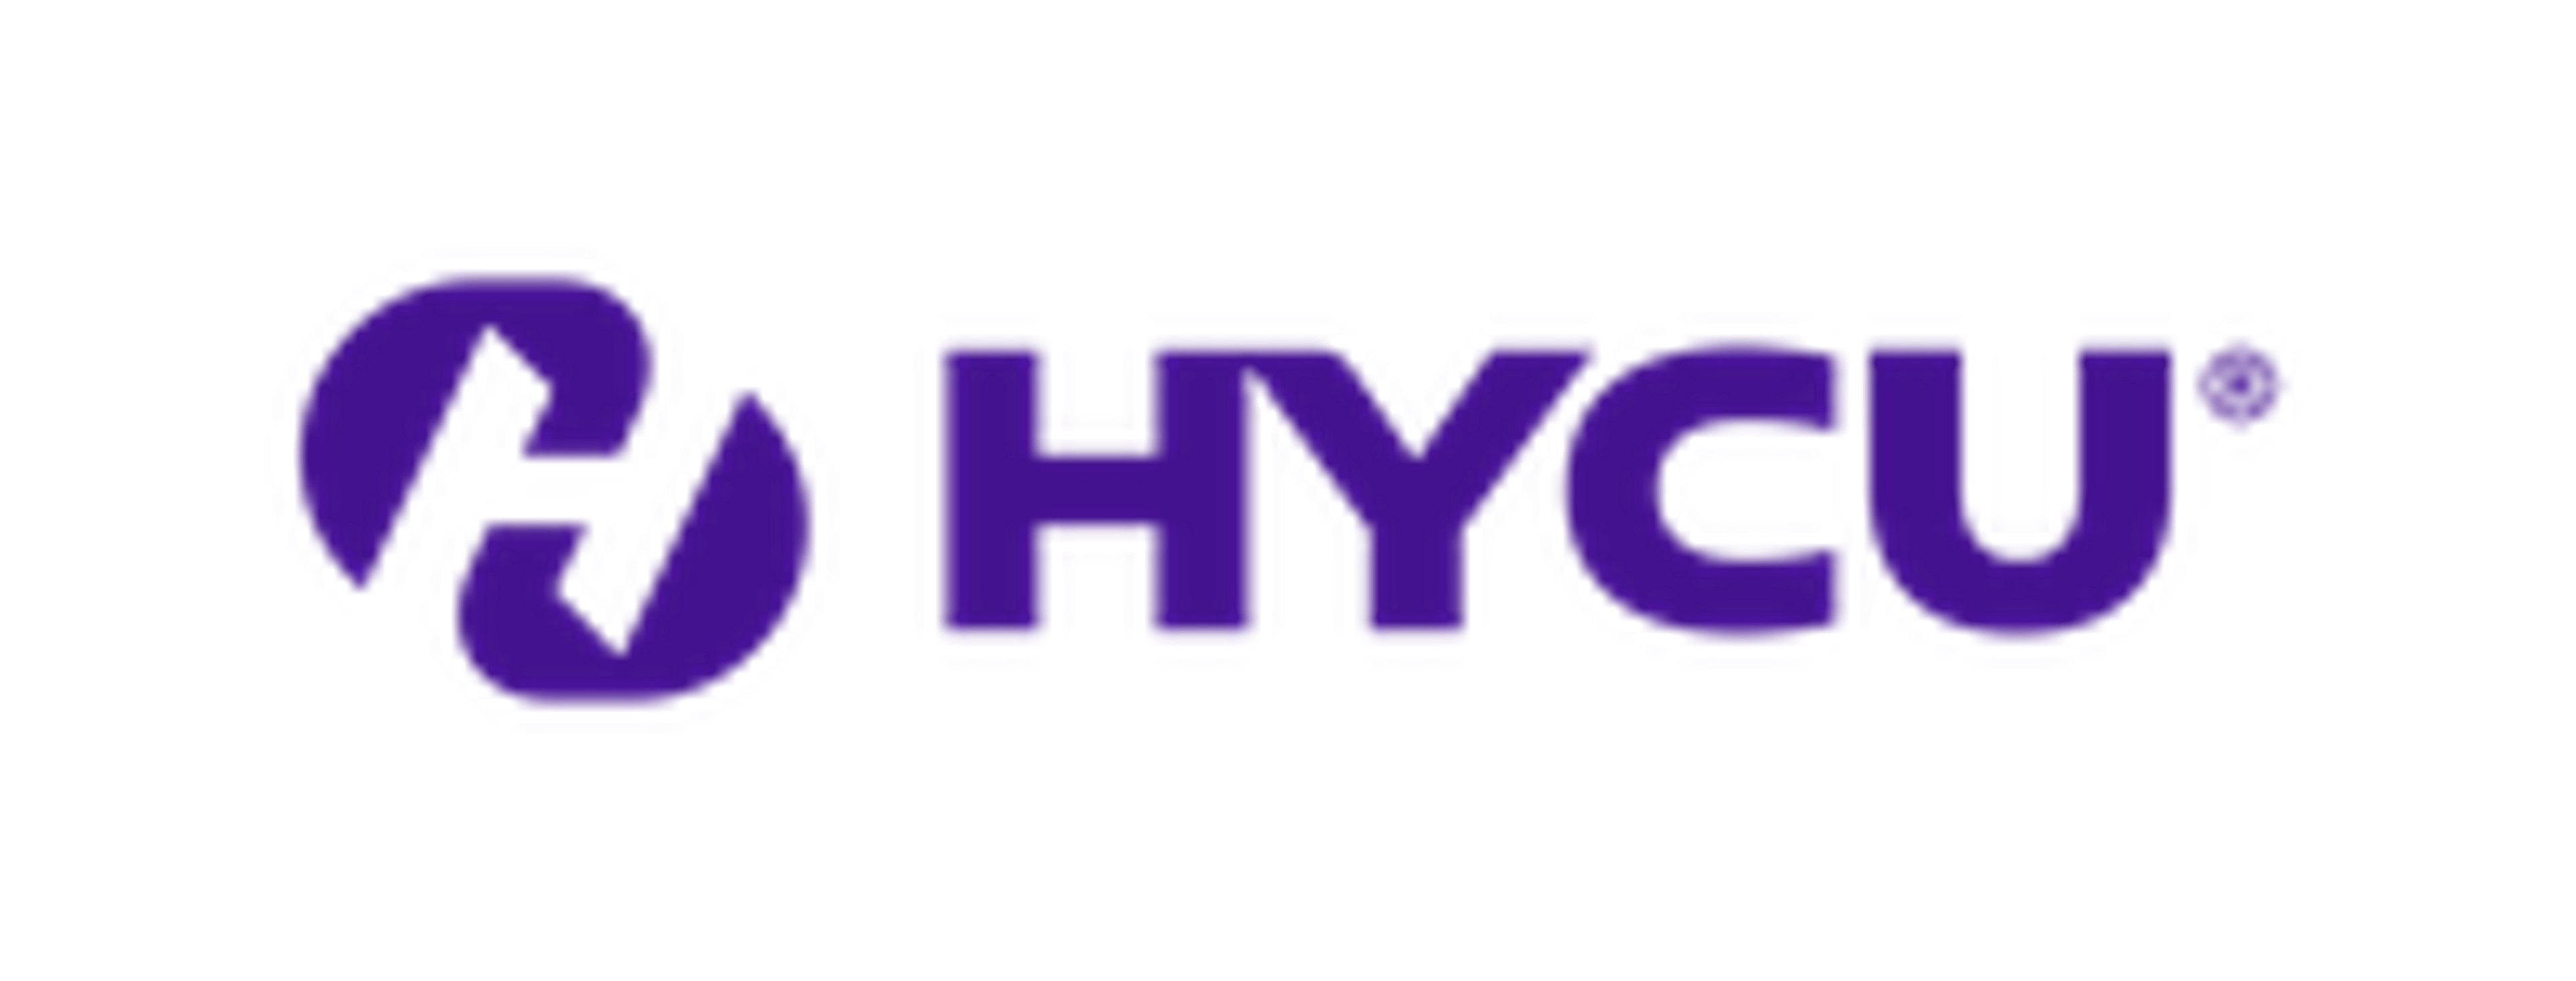 HYCU_Primary Logo purple